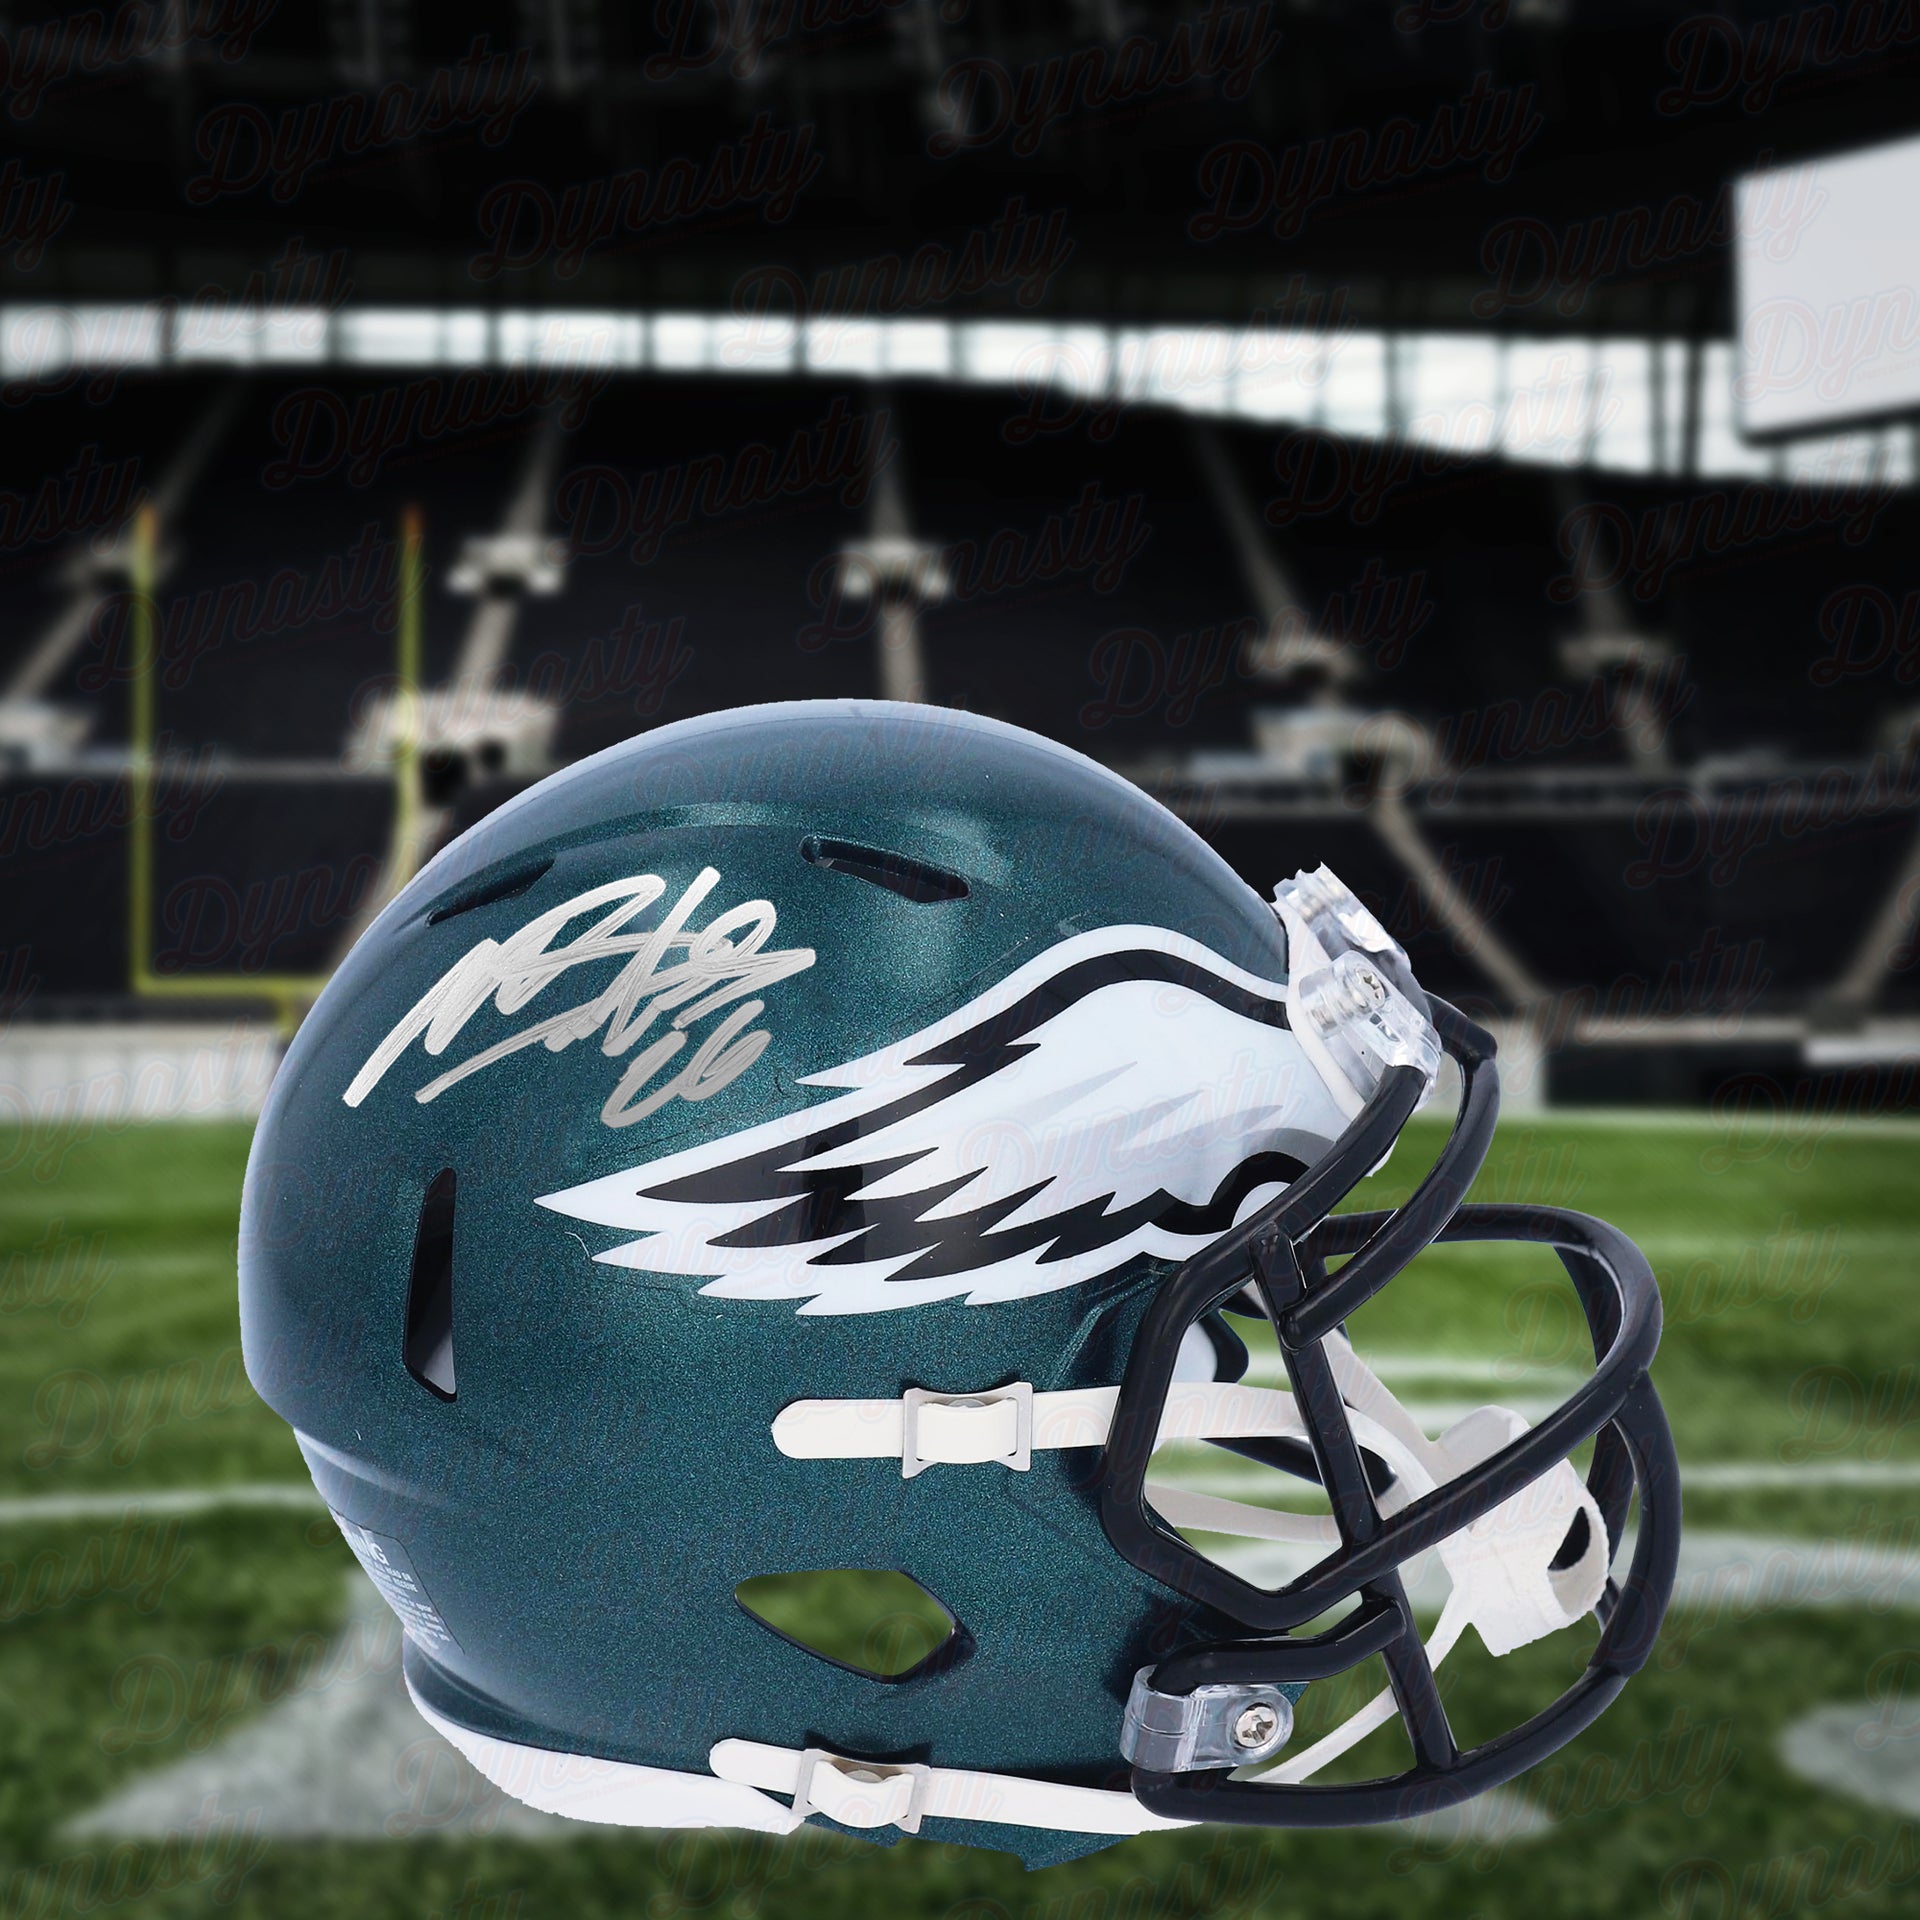 Miles Sanders Philadelphia Eagles Autographed Football Mini-Helmet - Dynasty Sports & Framing 